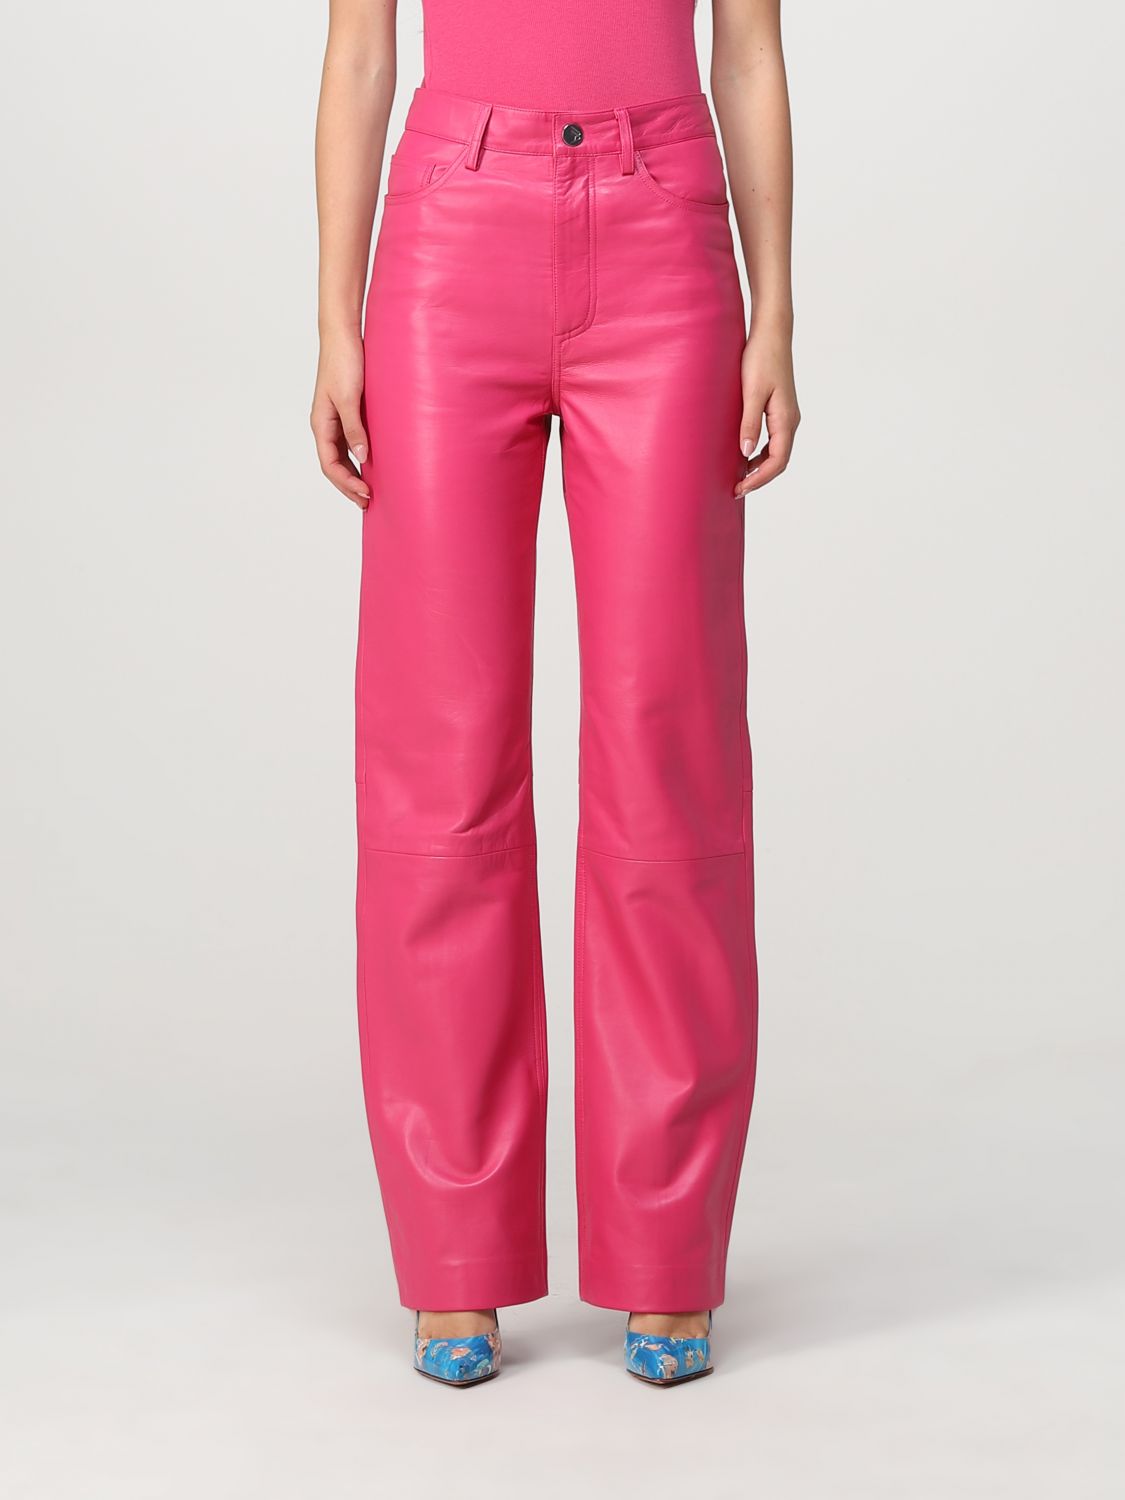 Pantalón Remain: Pantalón Remain para mujer rosa 1